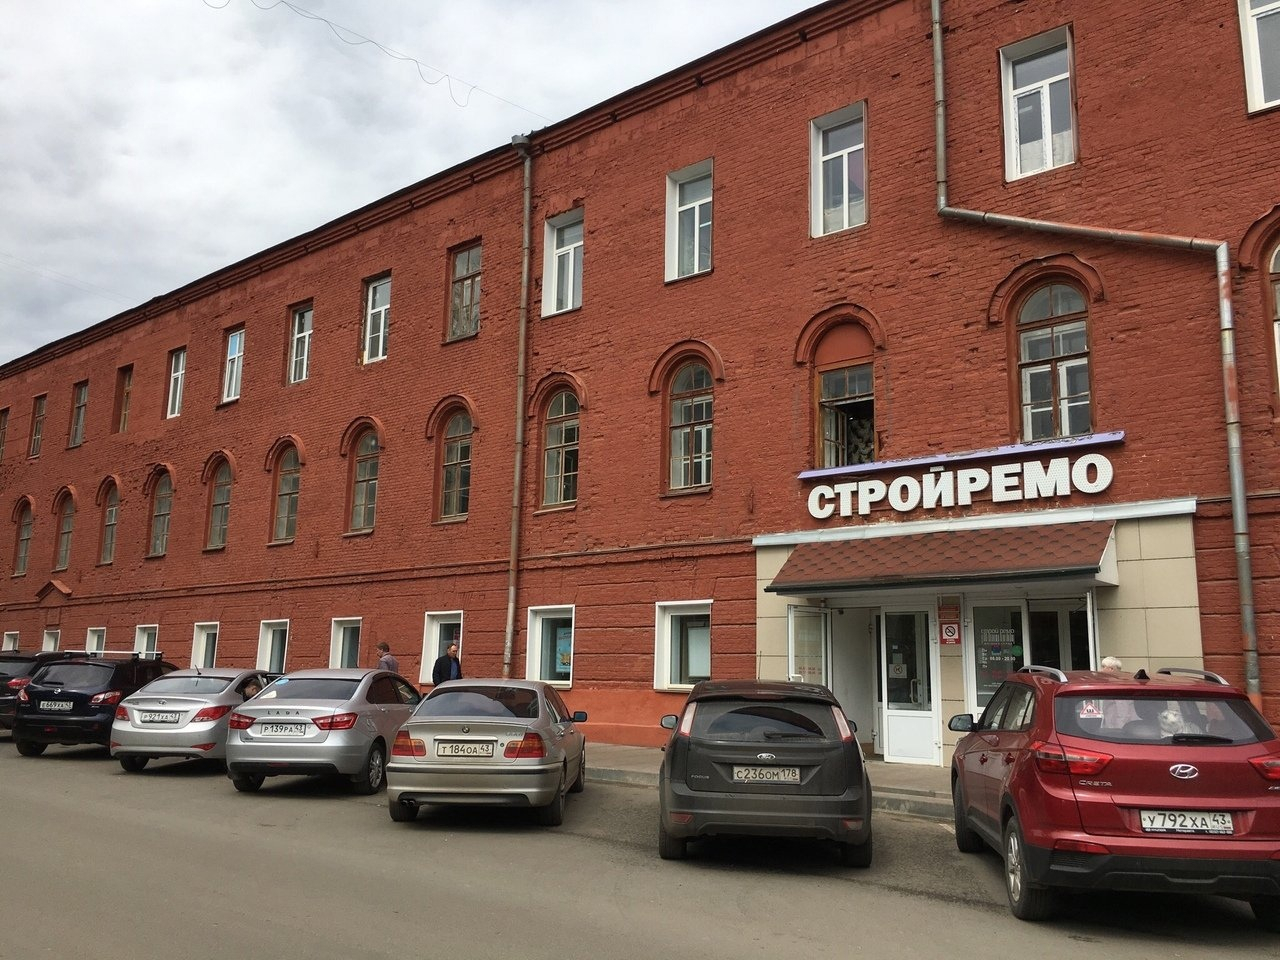 Сеть строительных магазинов в Кирове хотят признать банкротом